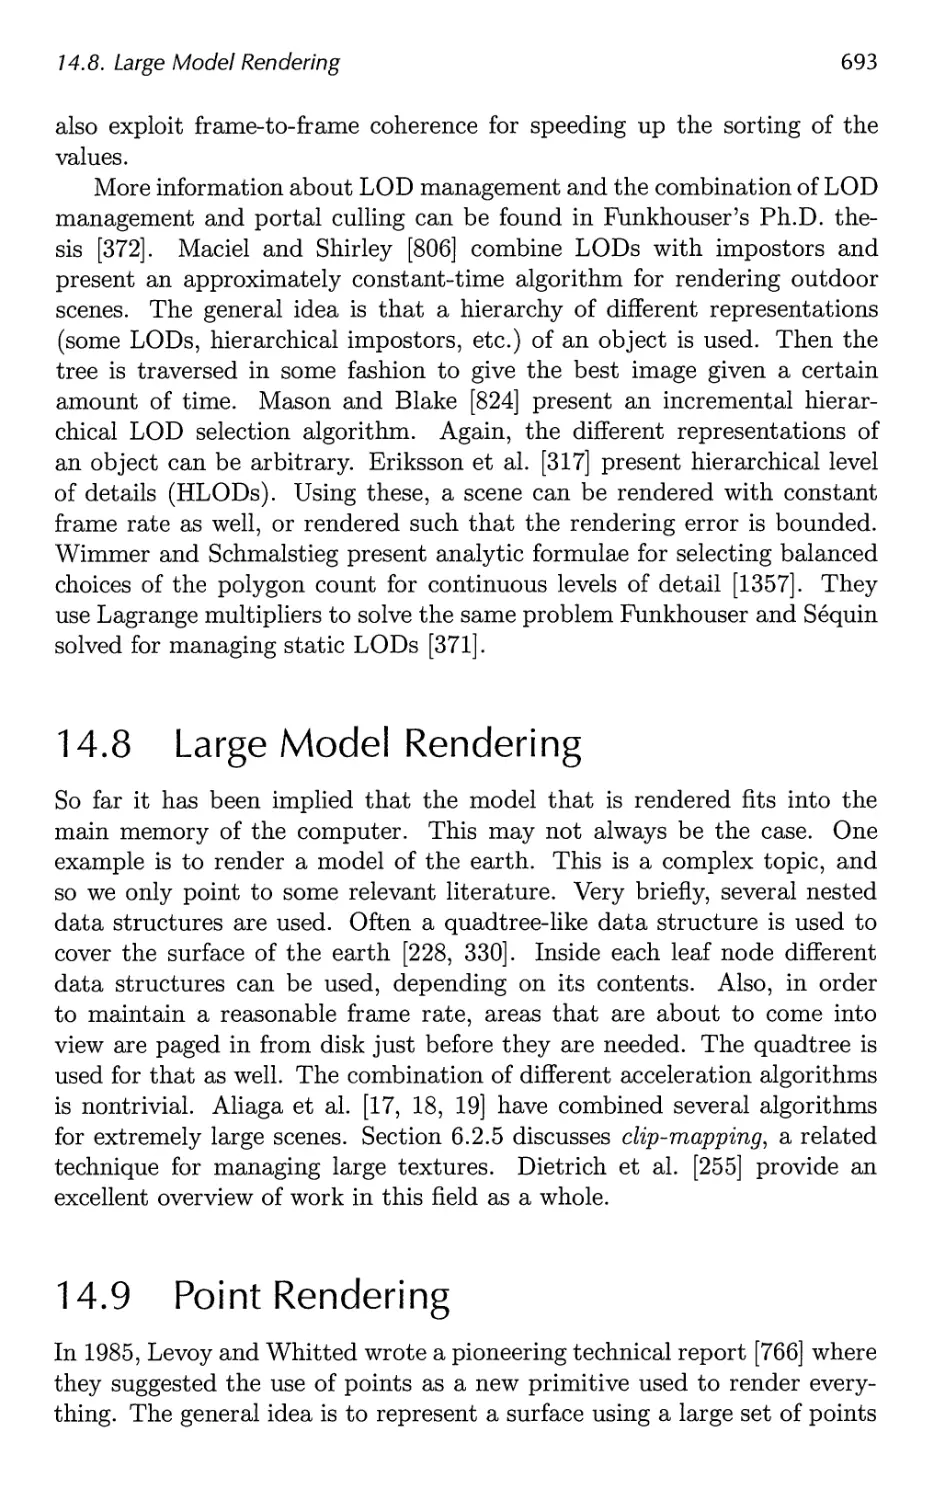 14.8 Large Model Rendering
14.9 Point Rendering